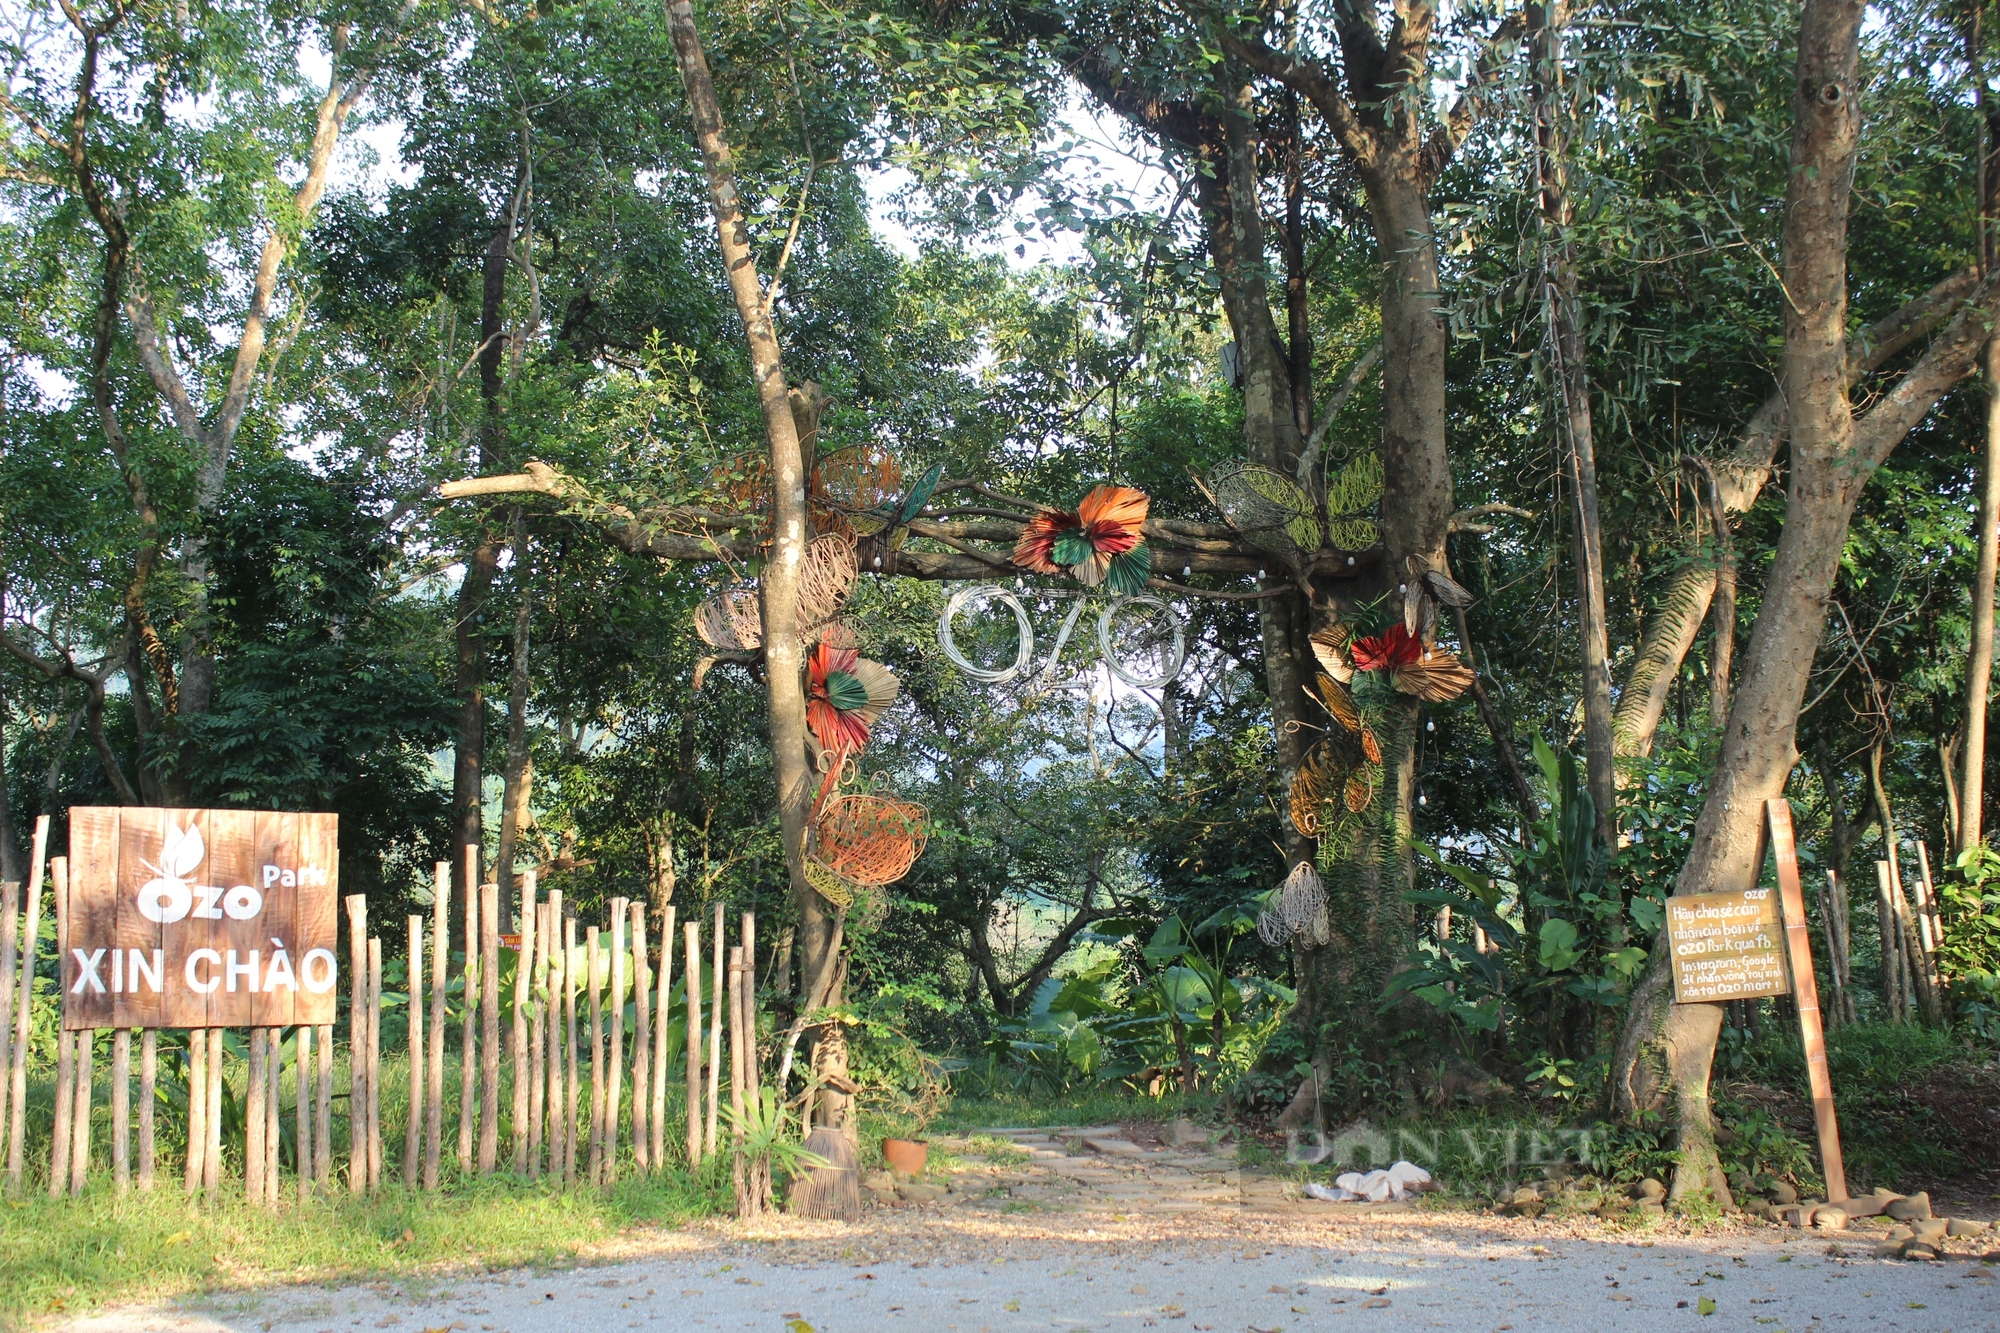 Cận cảnh khu du lịch lấn chiếm gần 40.000 m2 đất rừng trong di sản Phong Nha - Kẻ Bàng - Ảnh 2.